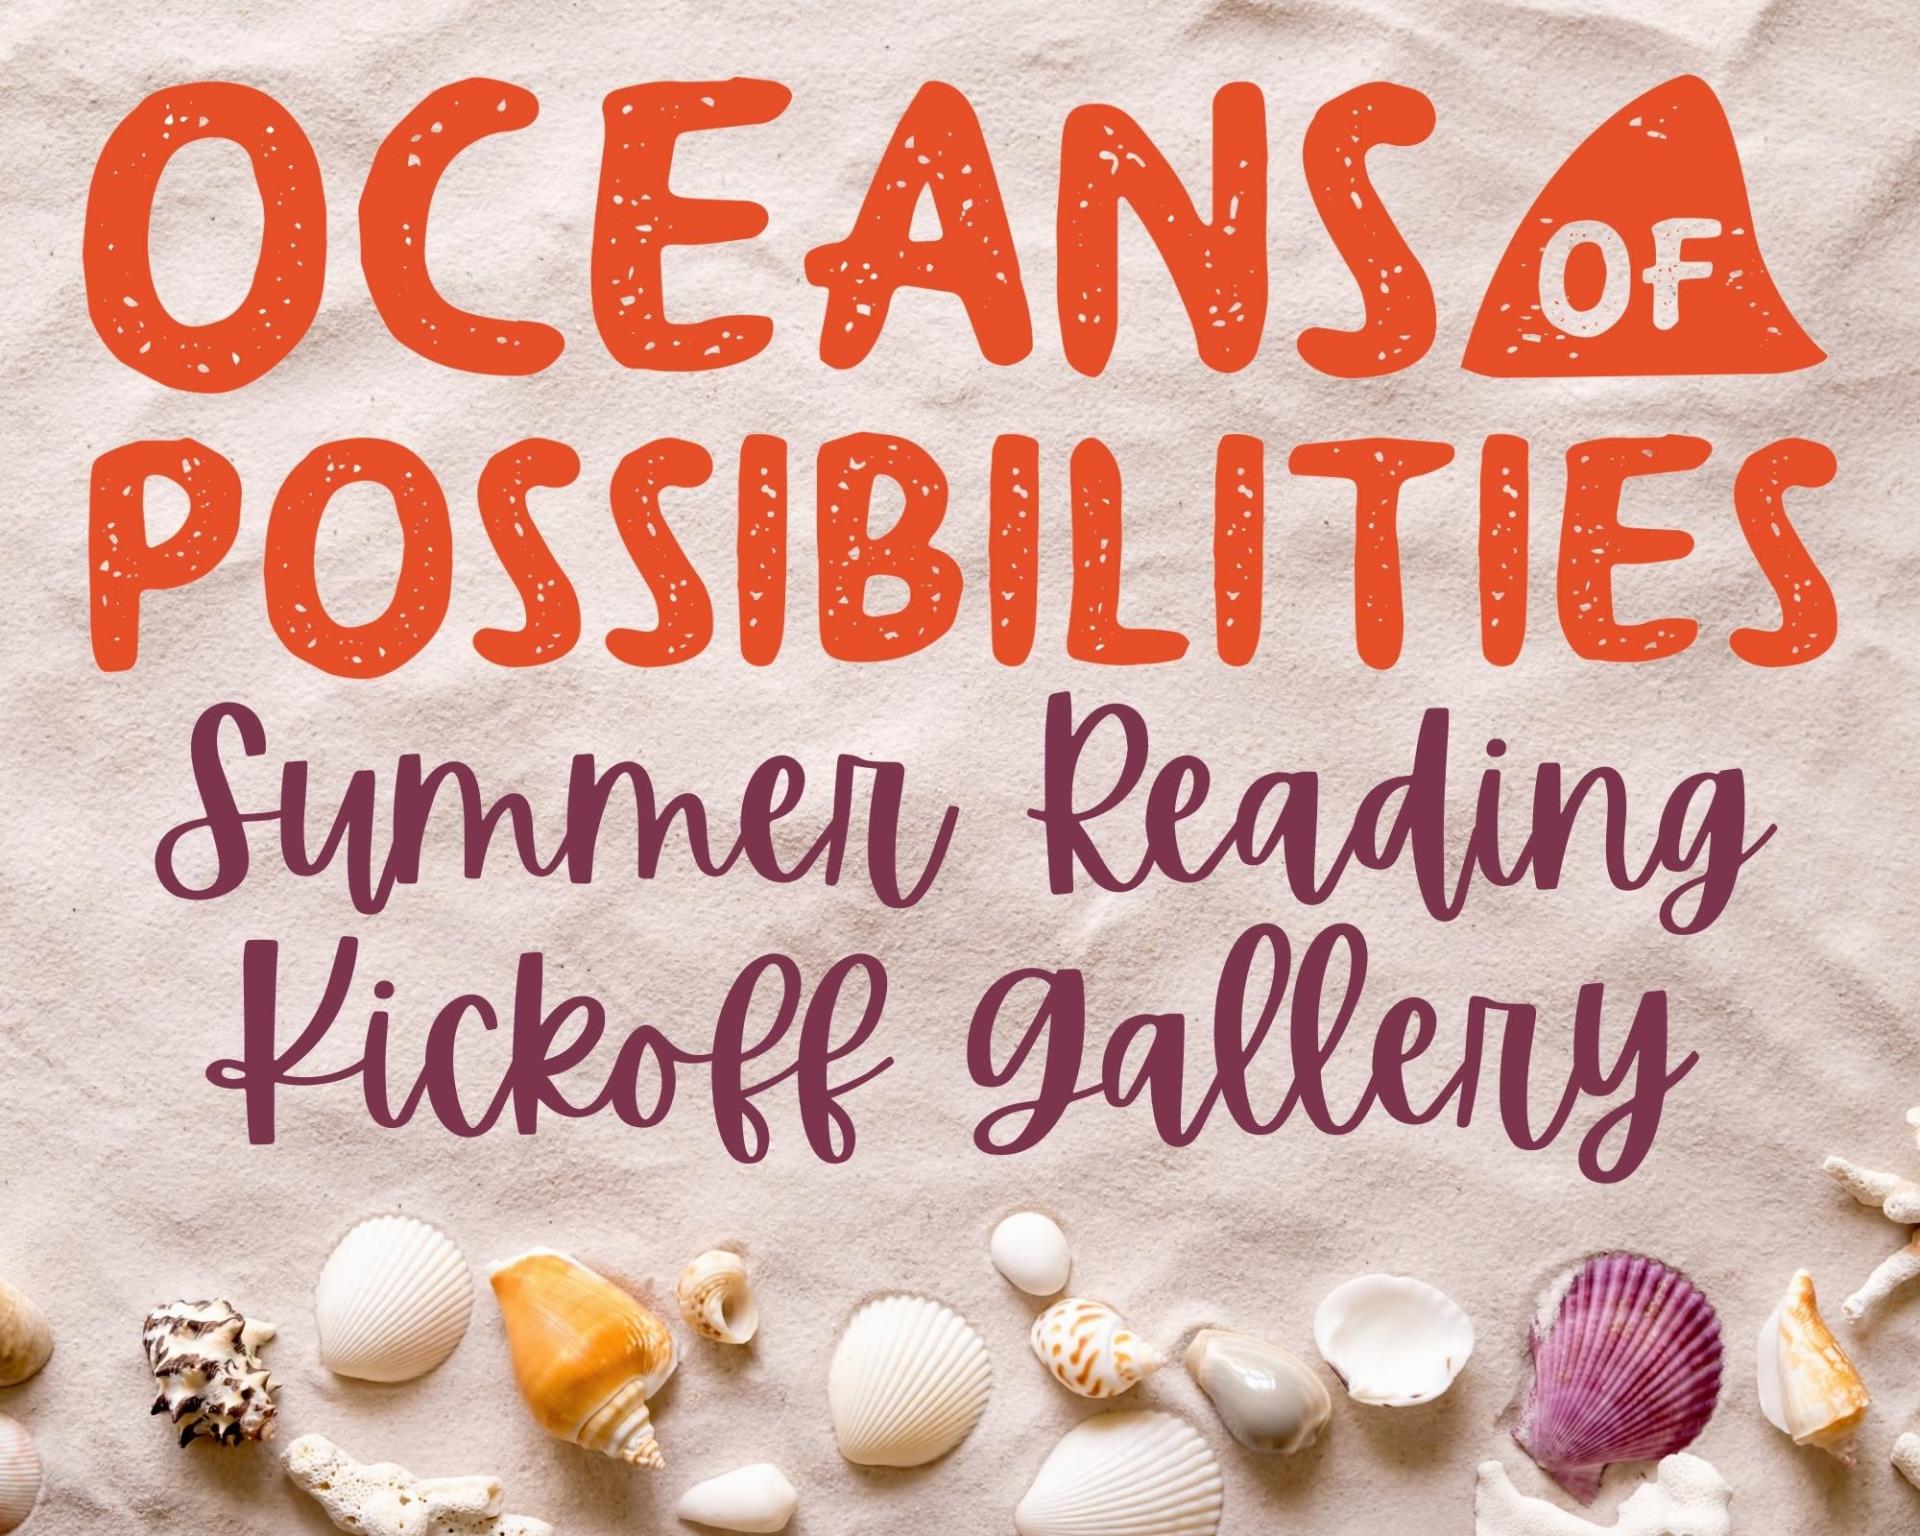 Summer Reading Kickoff Gallery (1)